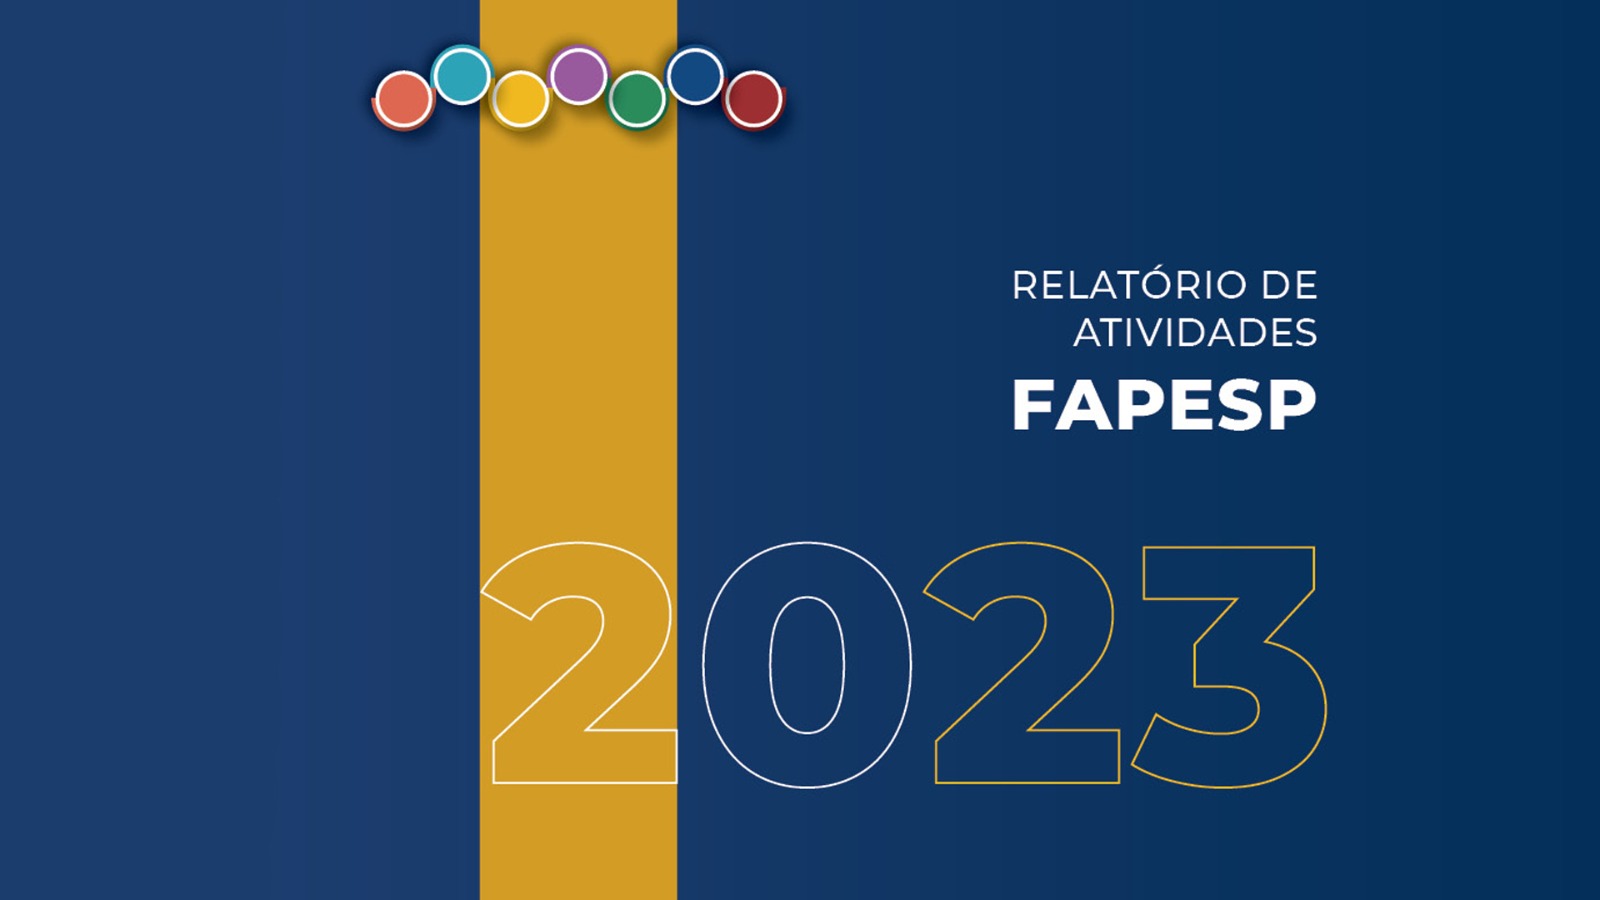 Atividades da FAPESP em 2023: Retomada da pesquisa em São Paulo é destaque no relatório.